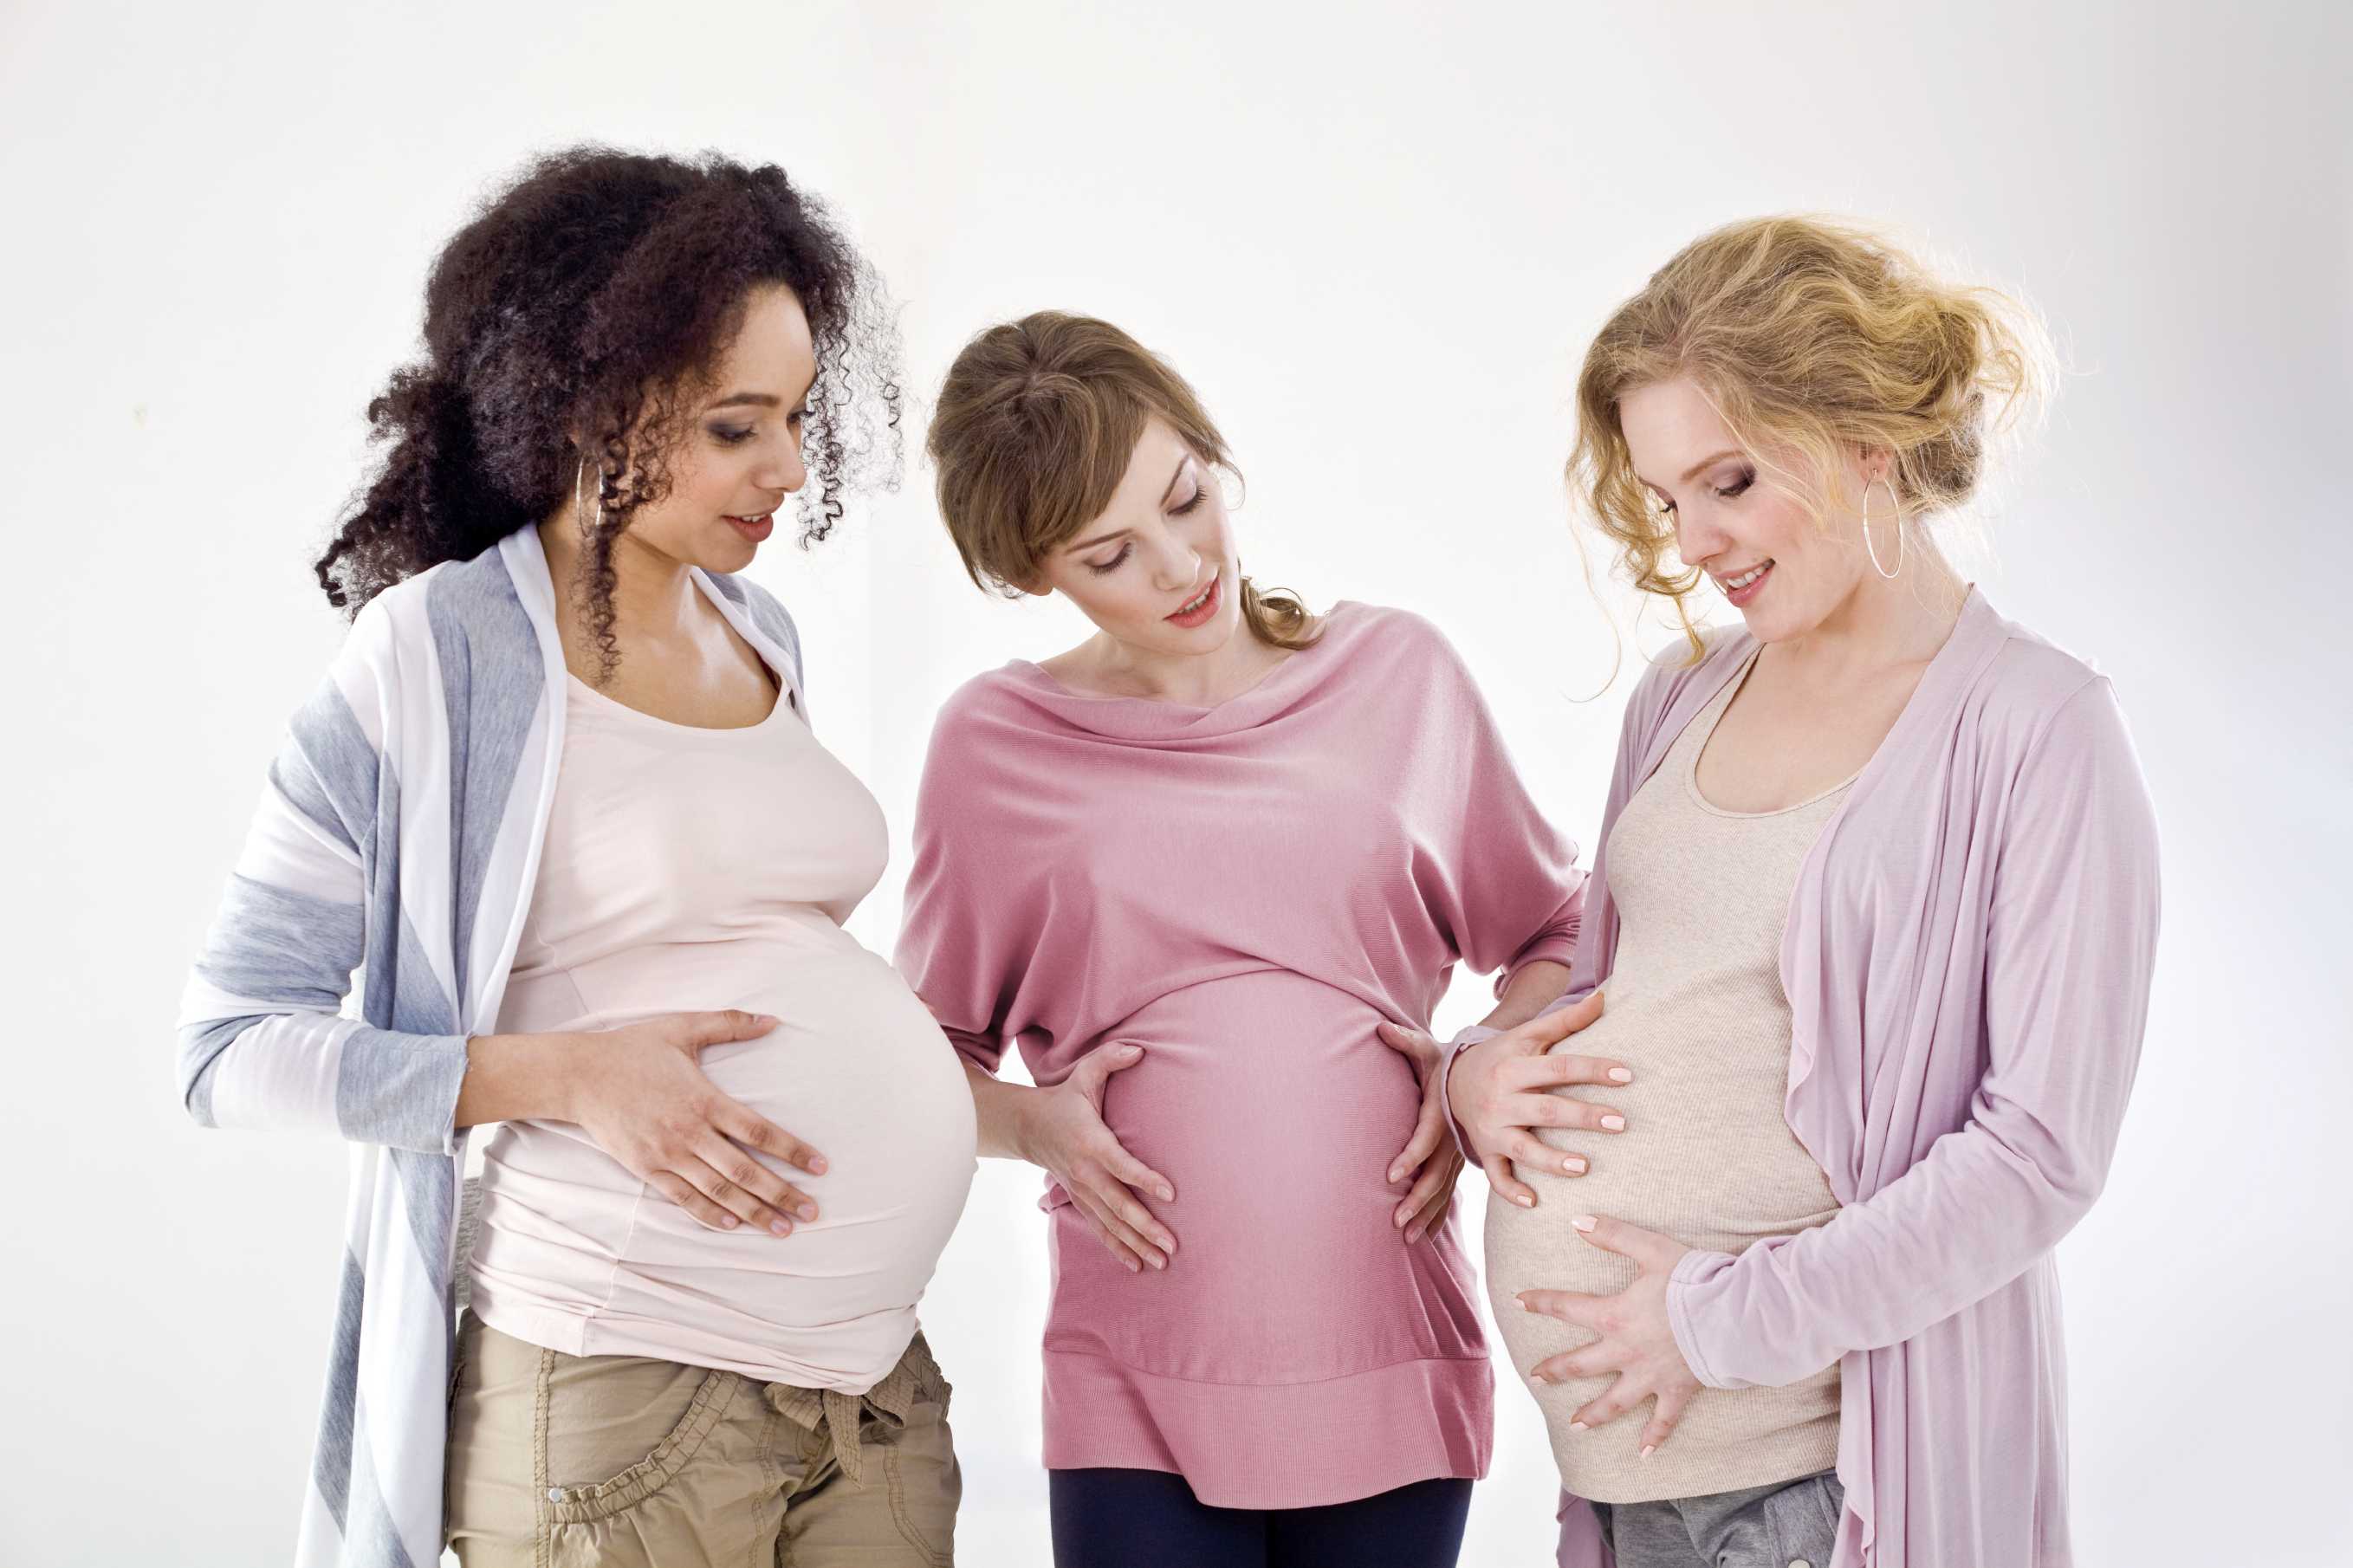 29-я неделя беременности: развитие плода, здоровье мамы, питание